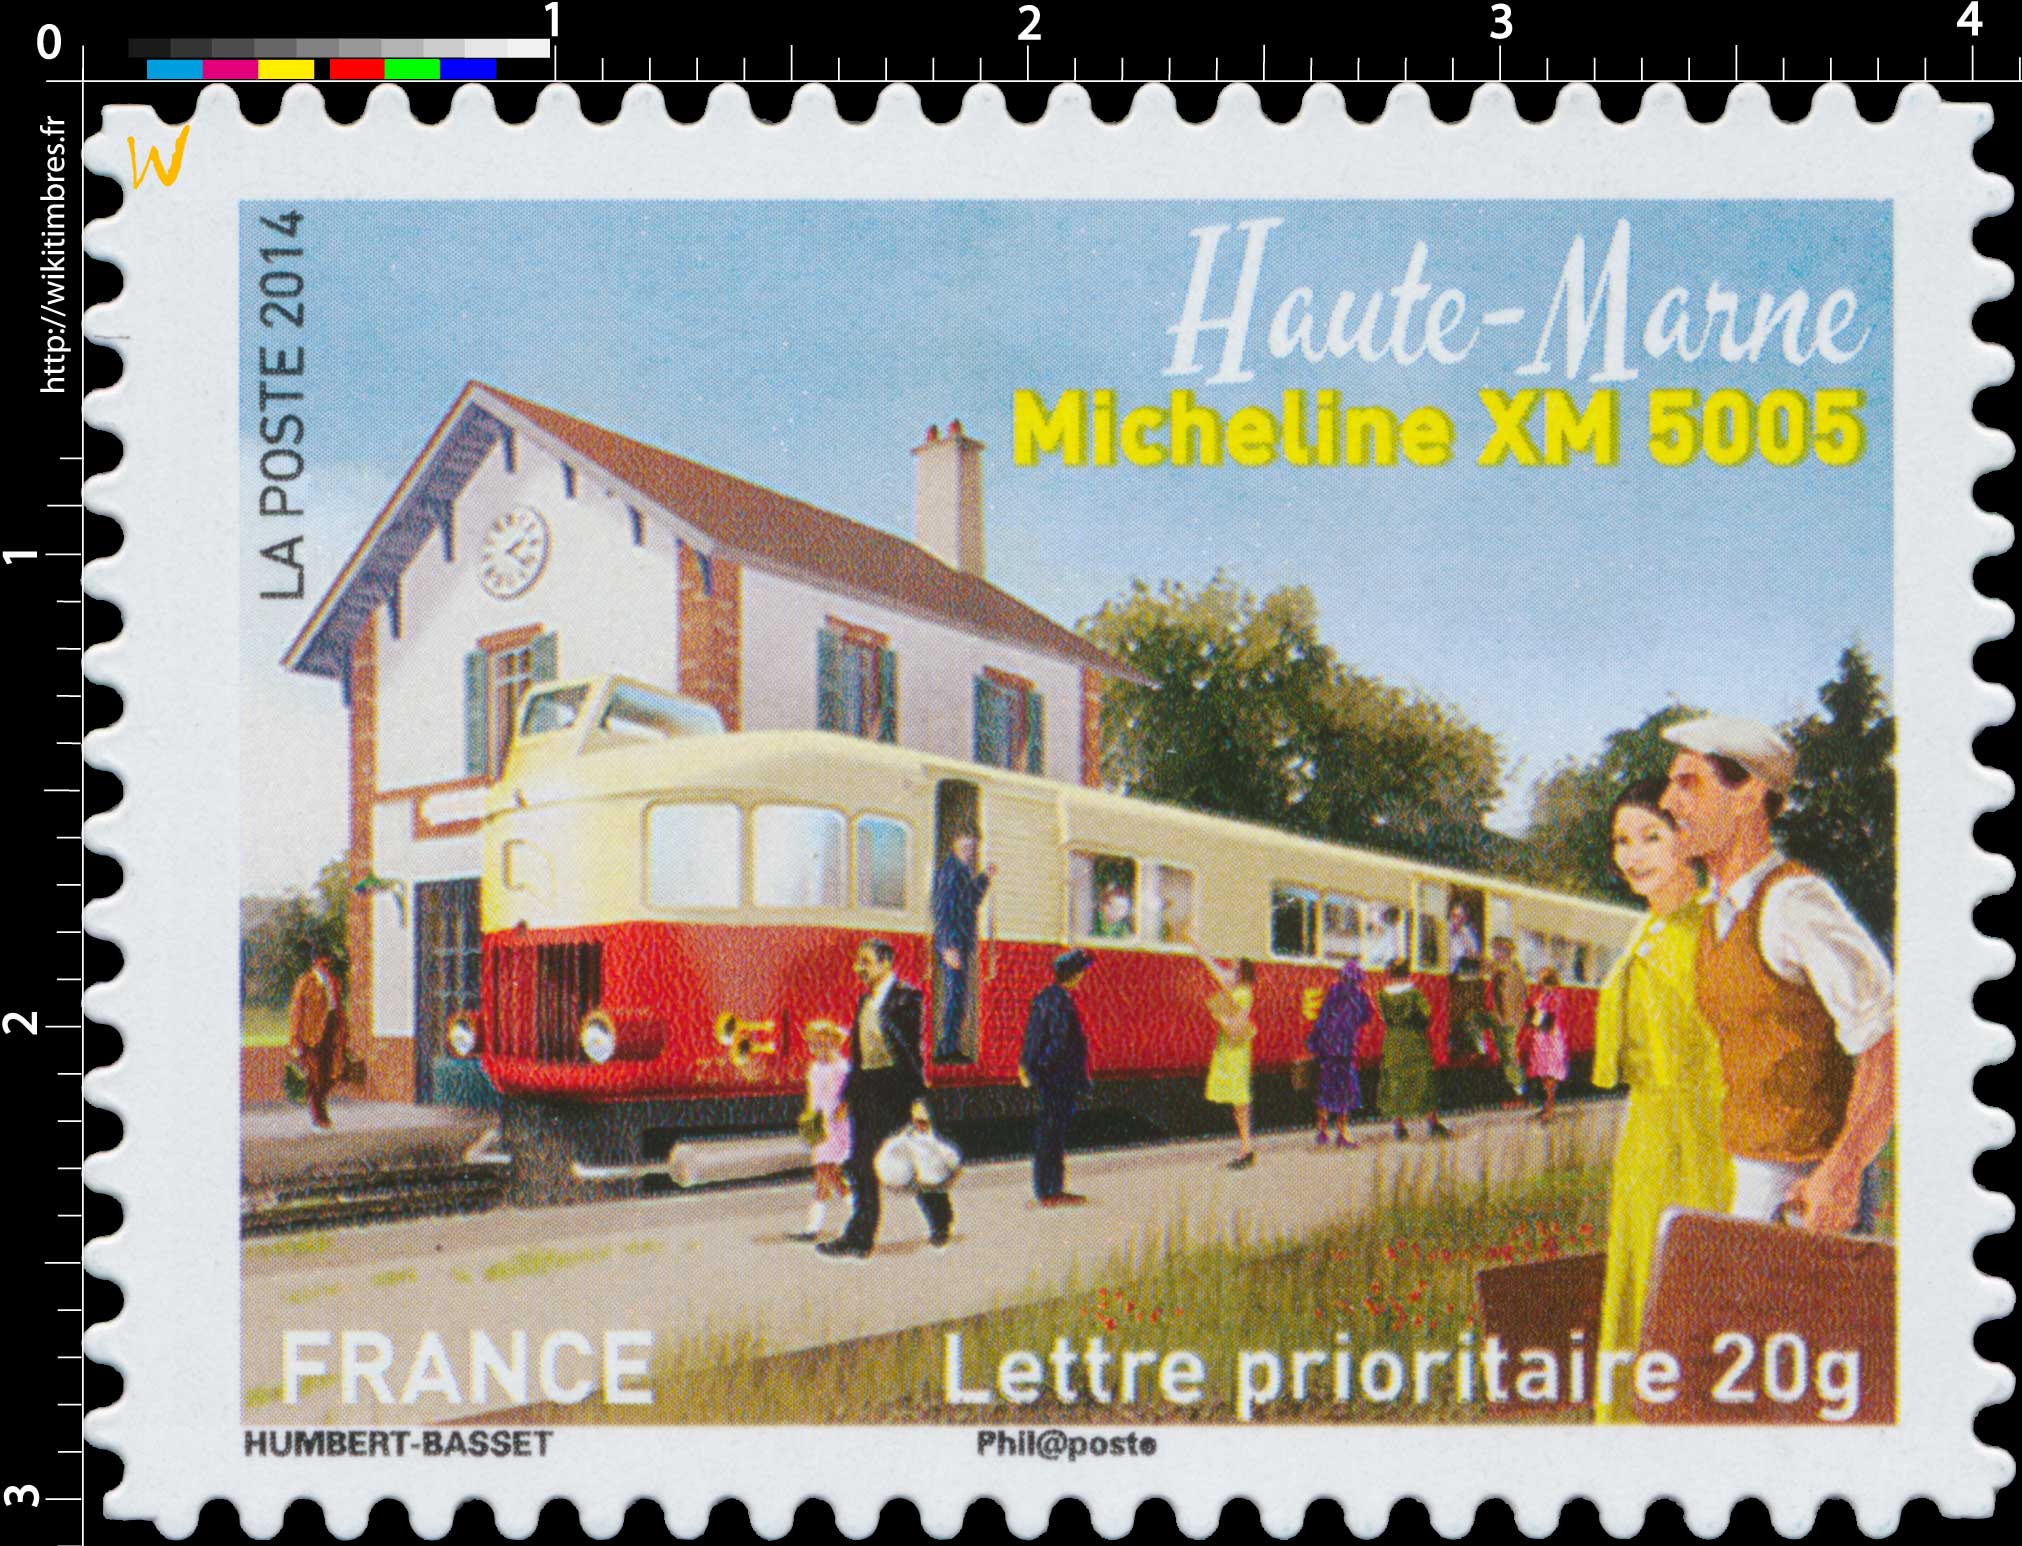 2014 Haute-Marne Micheline XM 5005